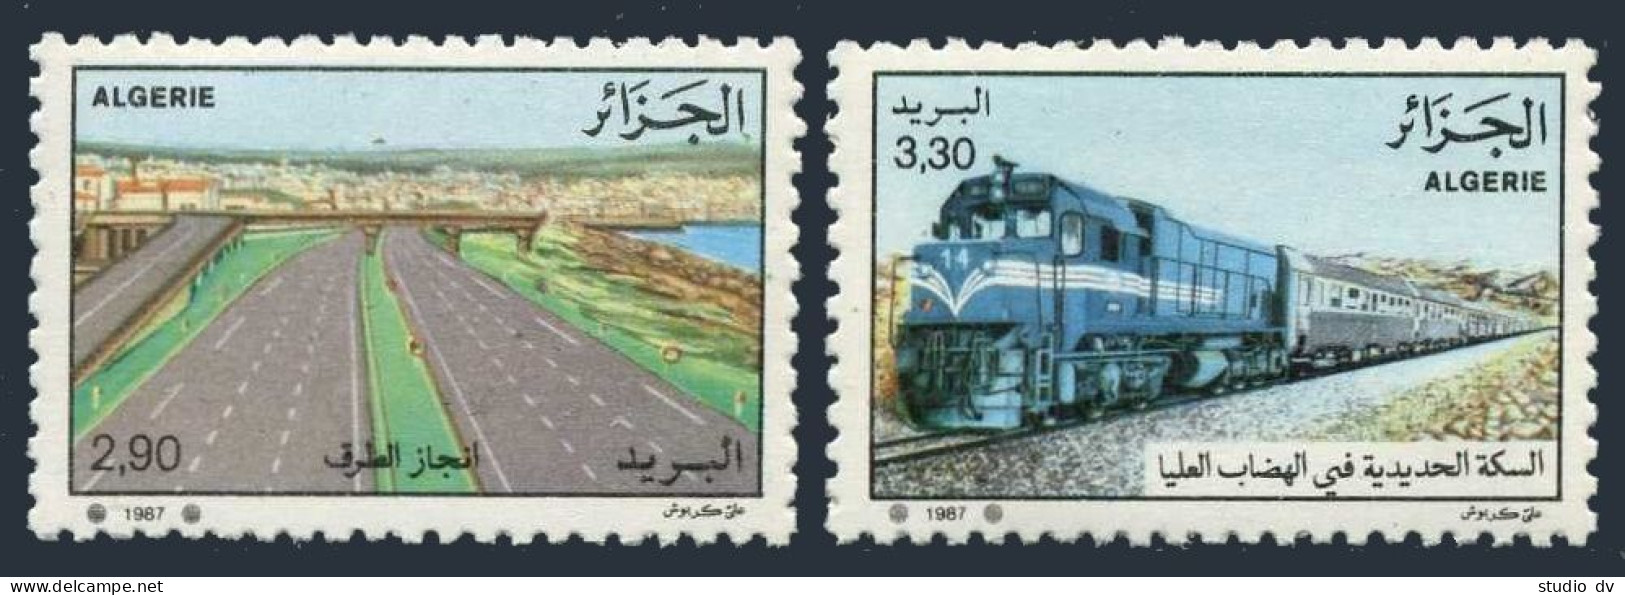 Algeria 856-857,MNH.Michel 952-955. Transportation 1987.Diesel Train. - Algérie (1962-...)